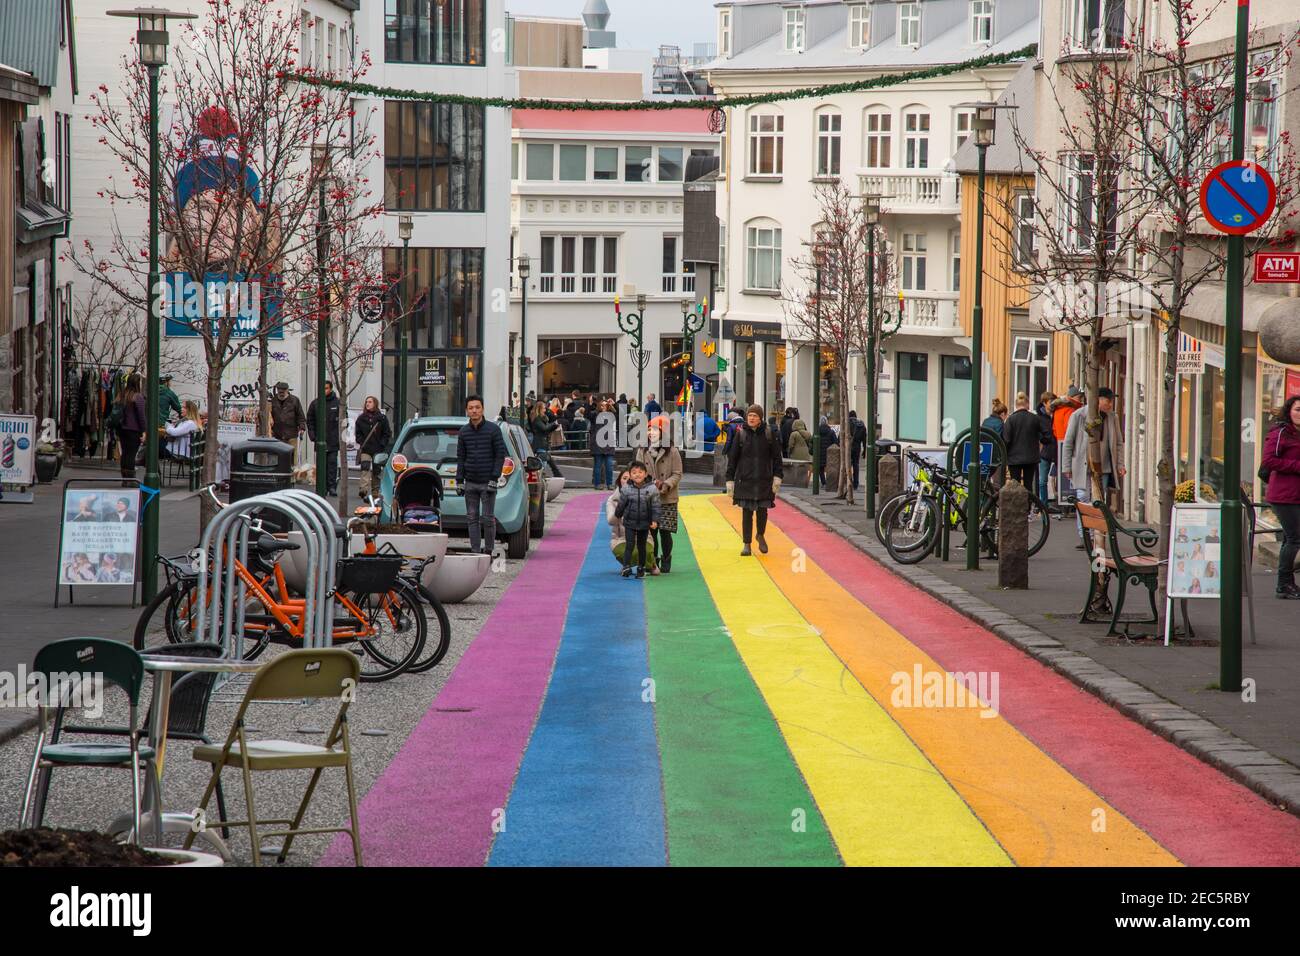 Reykjavik Iceland - November 2. 2019: People walking on the rainbow painted Skolavordustigur street Stock Photo